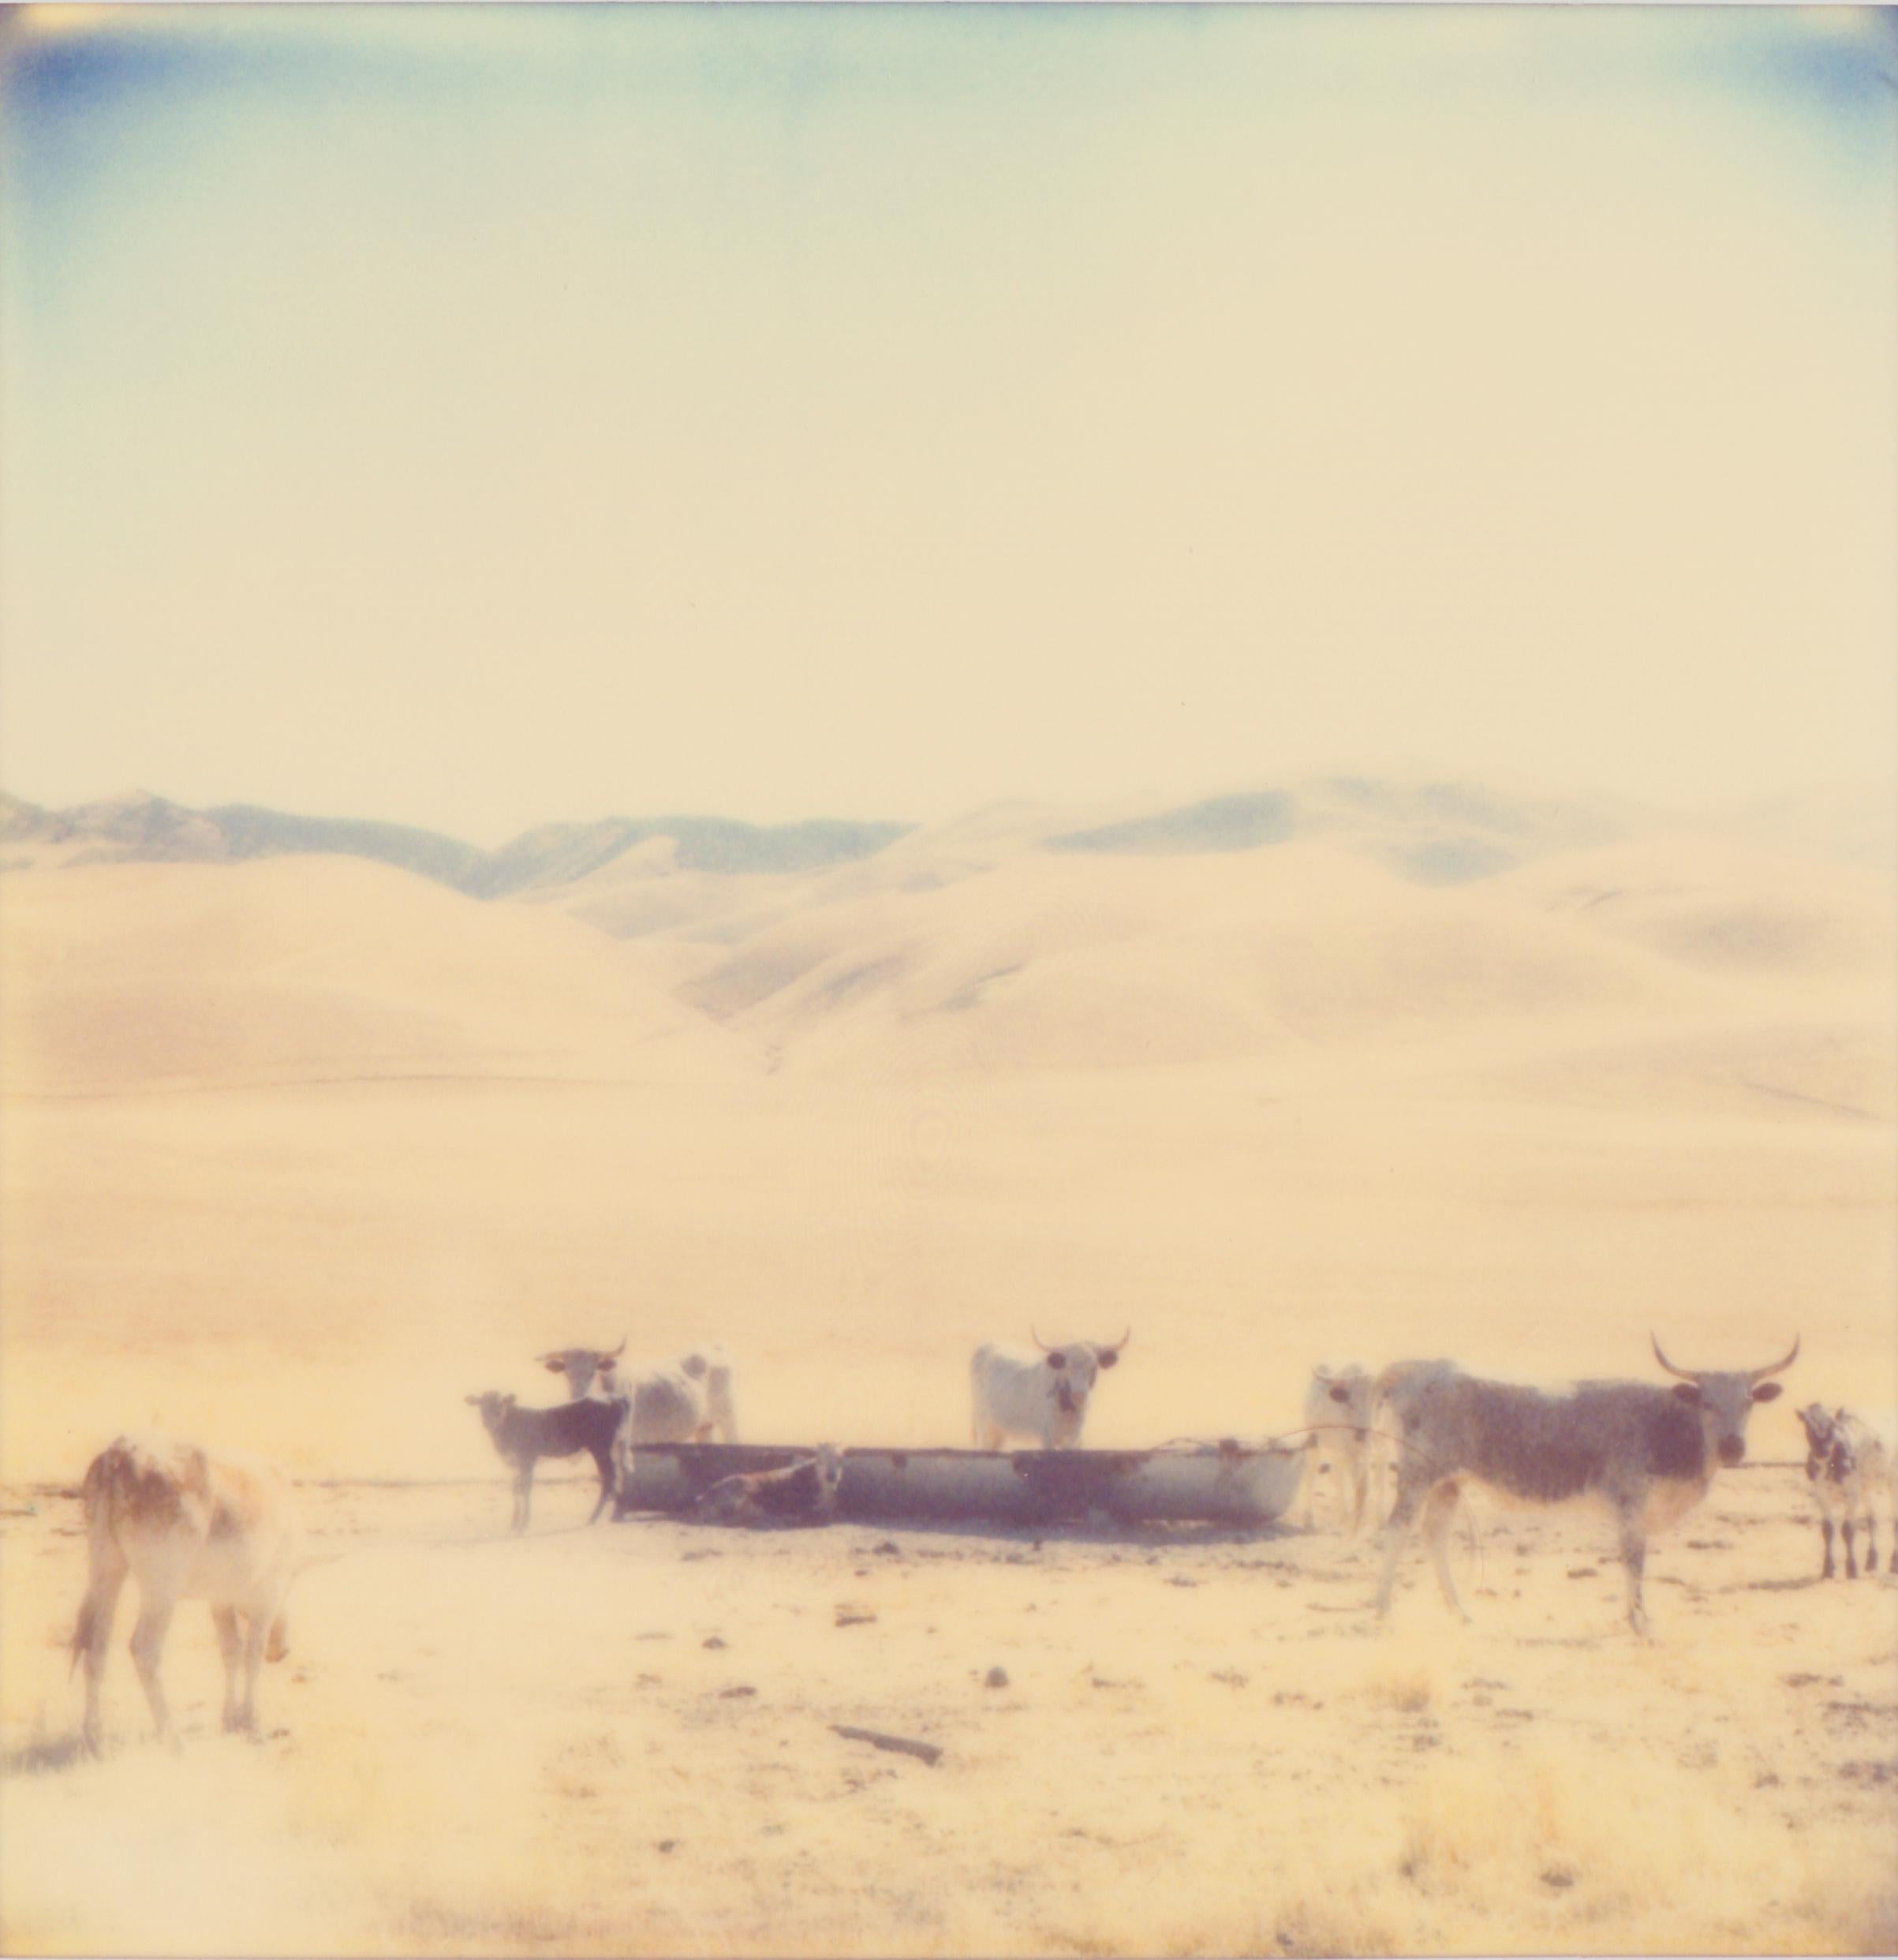 Oilfields, diptych / Contemporary, Polaroid, Analog, Photograph - Orange Landscape Photograph by Stefanie Schneider